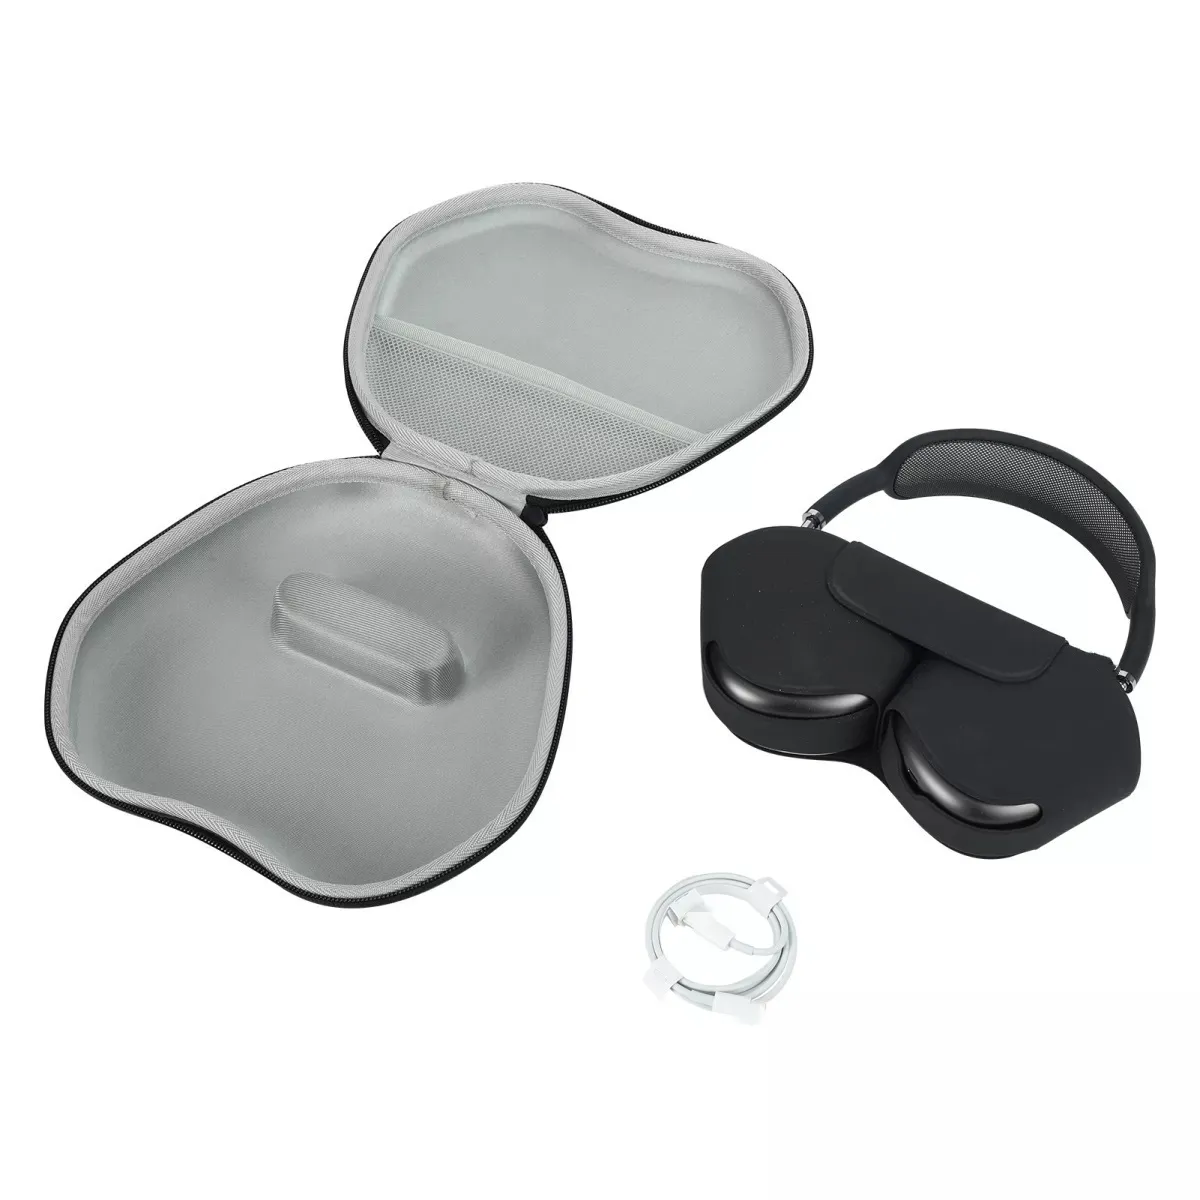 防水 EVA ハンドストラップデザイン収納バッグケース旅行保護ケースキャリングボックスカバー -Airpods Max ワイヤレスヘッドセット